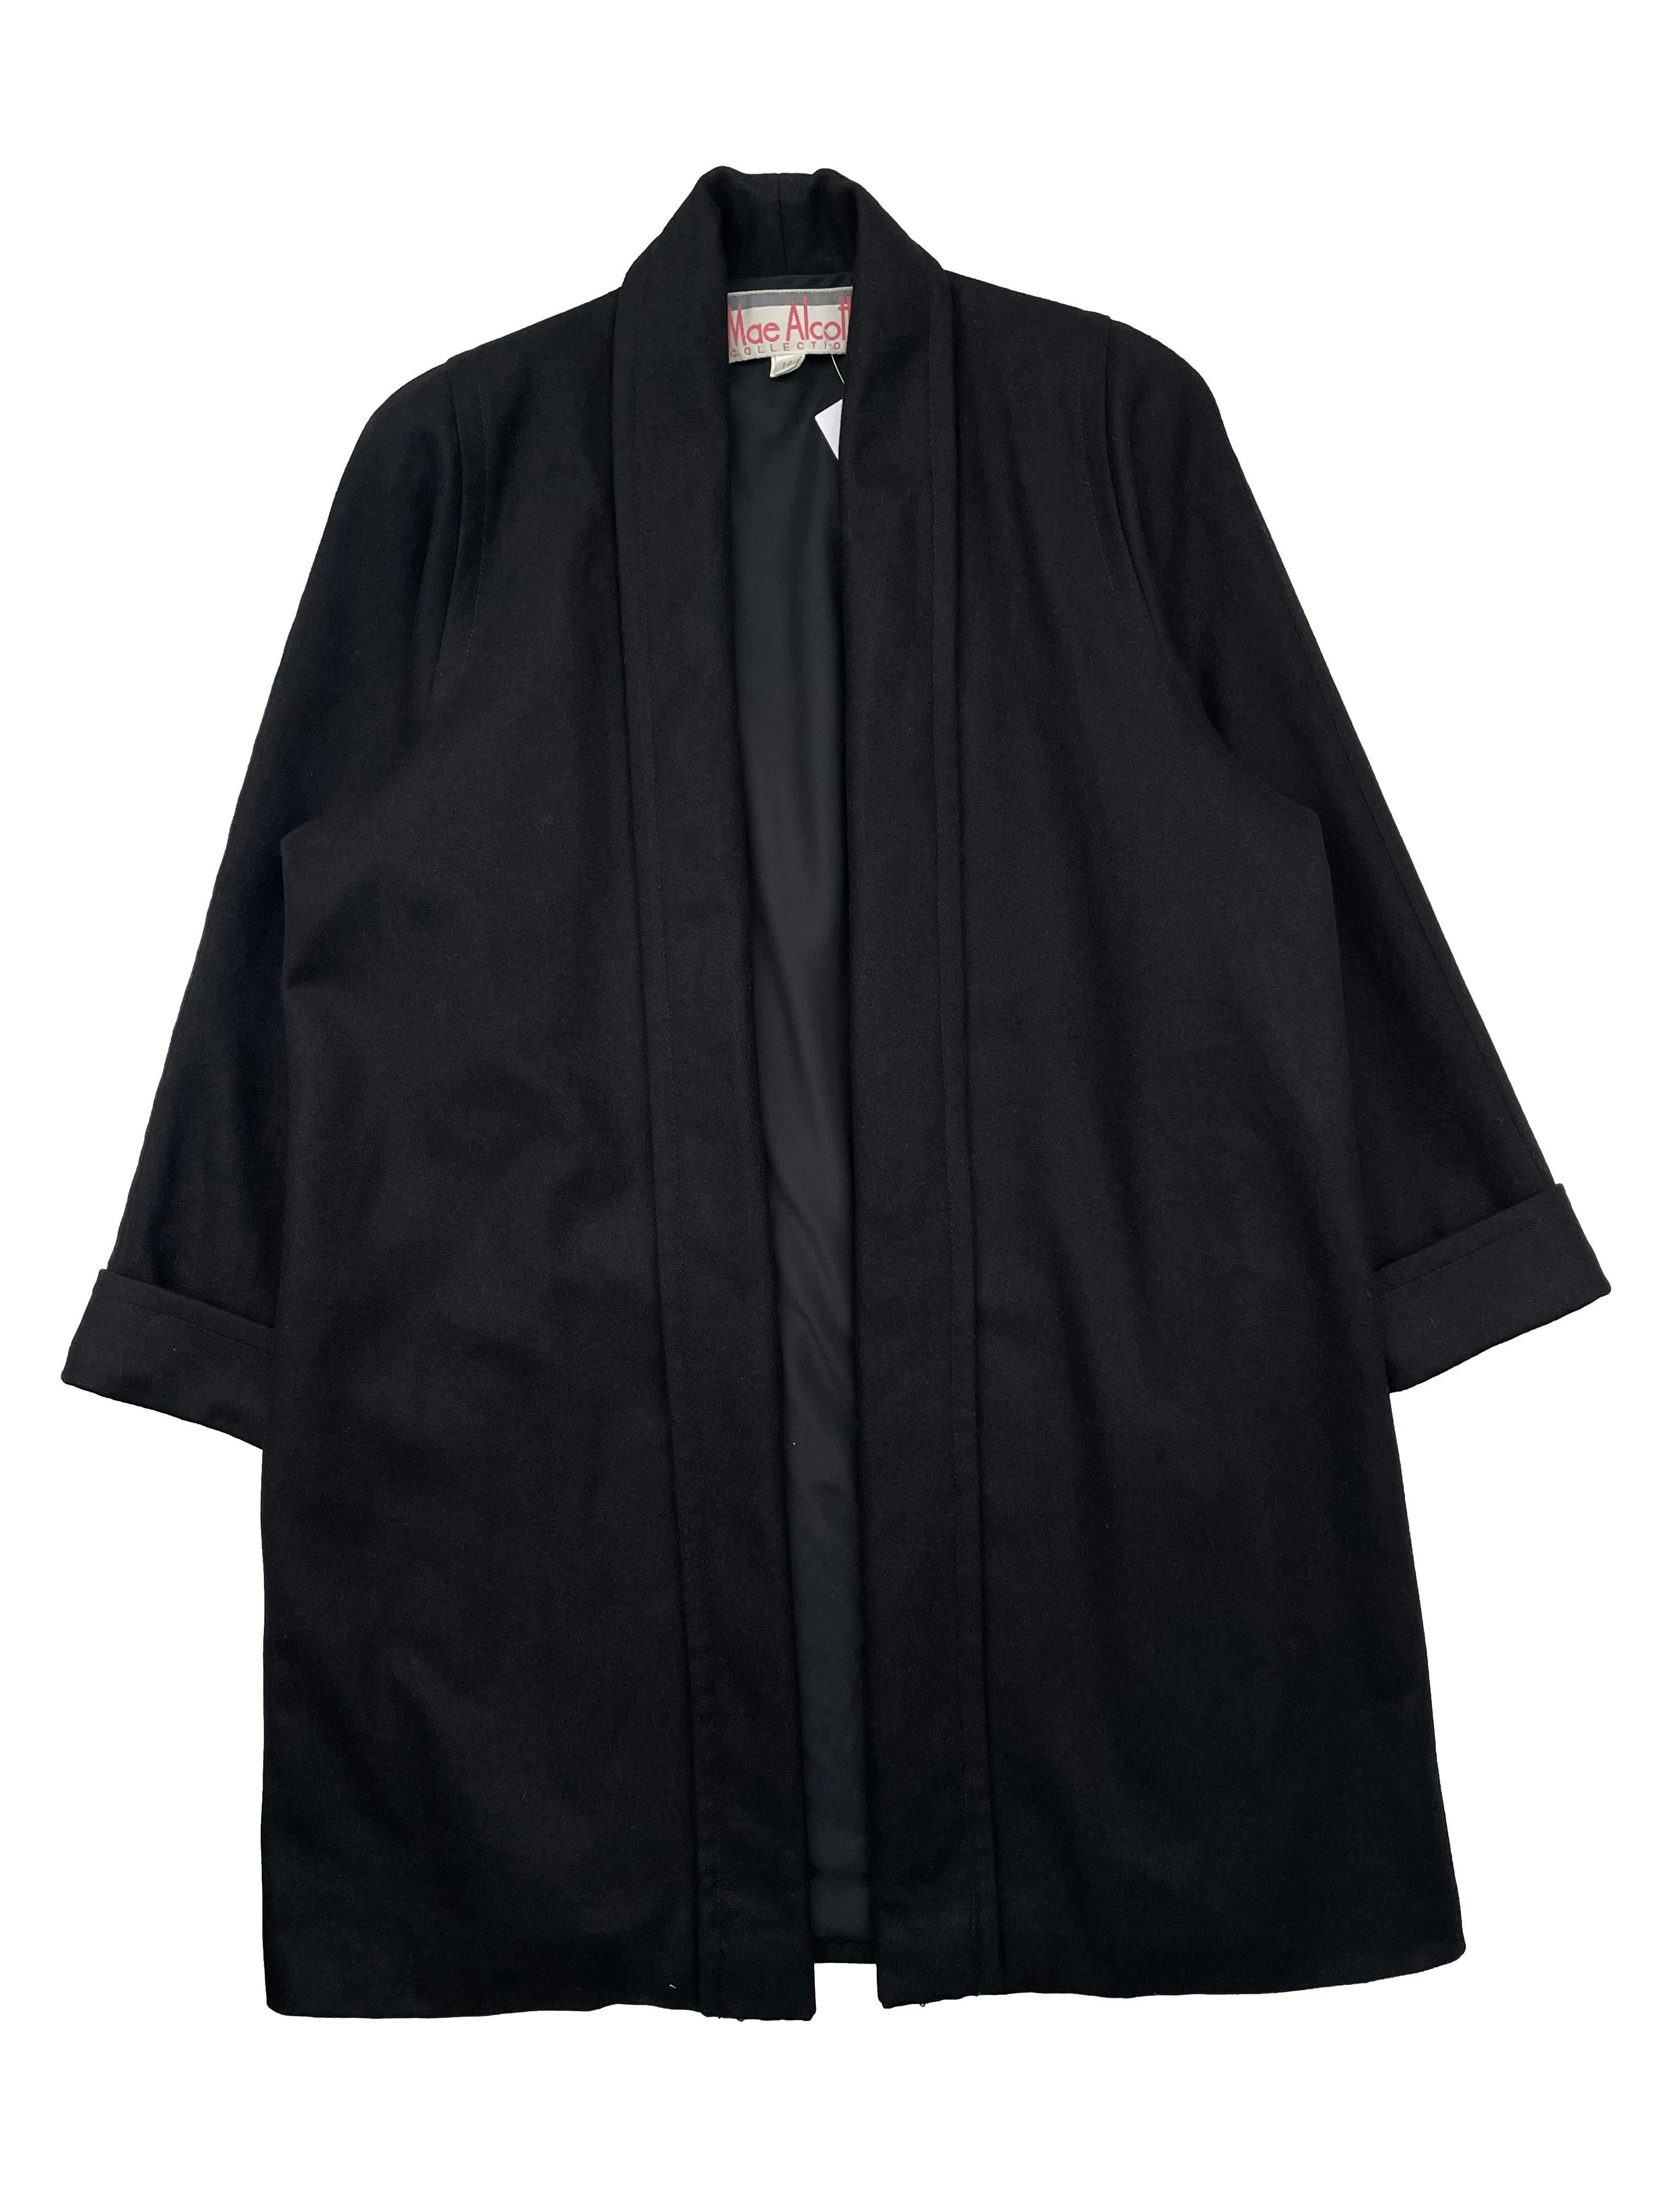 Saco negro Mae Alcott de paño, modelo abierto con forro, hombreras y bolsillos laterales. Busto 150cm, Largo 100cm.